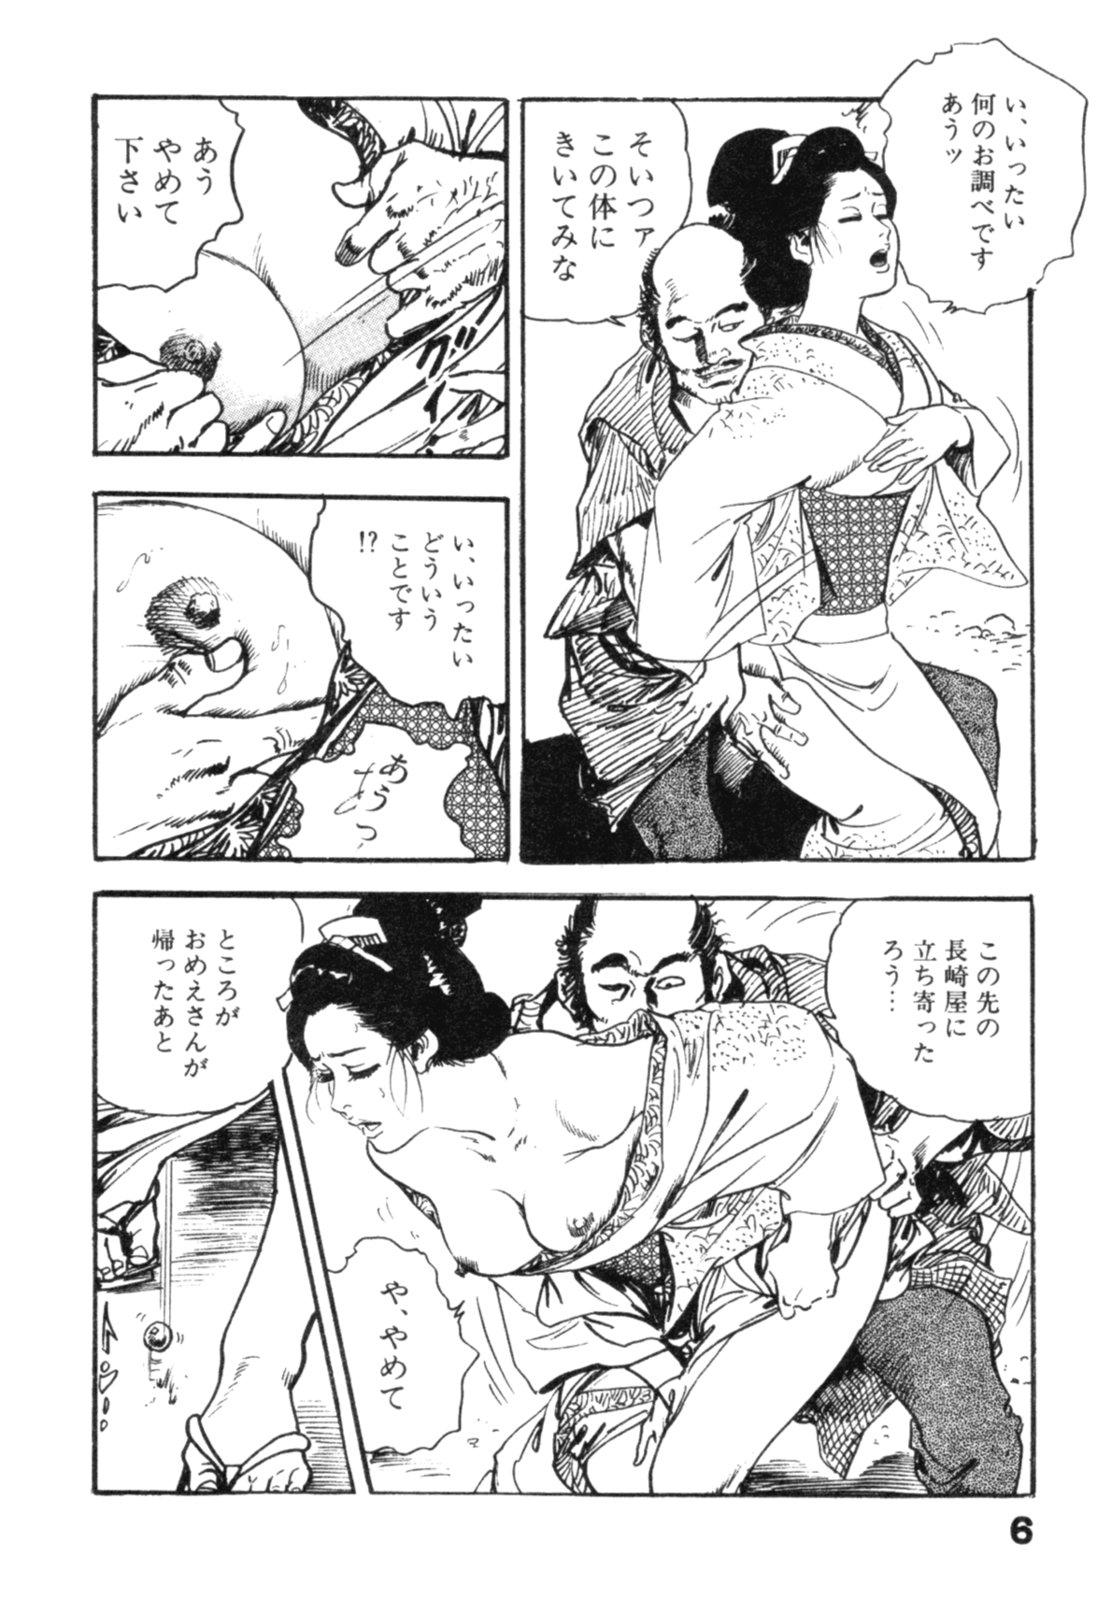 Nalgas Jidaigeki Series 2 ~ Midare Kannon Piercing - Page 9